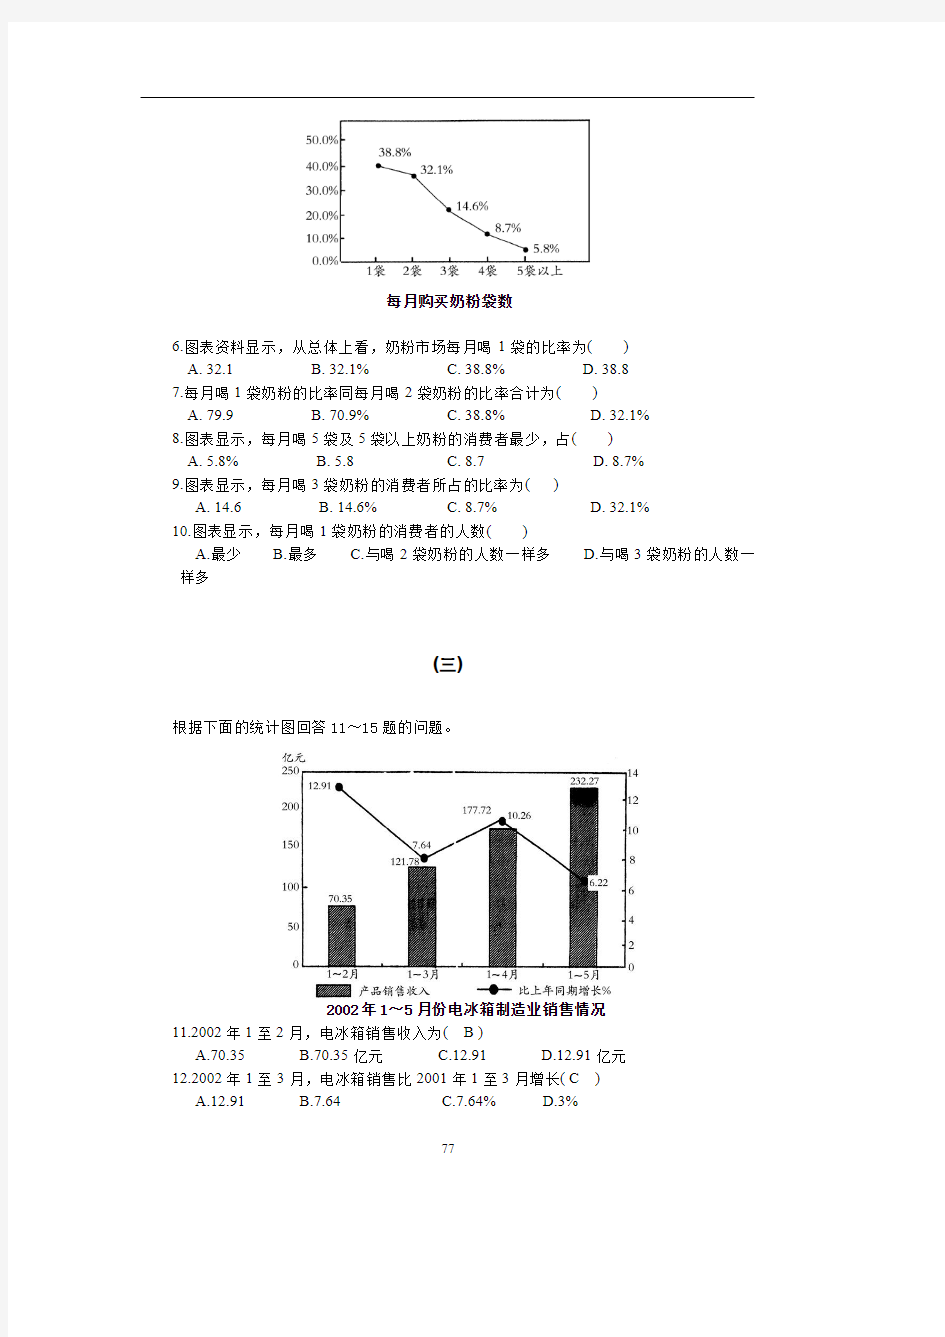 江苏省事业单位考试题库 资料分析-统计图(含答案)